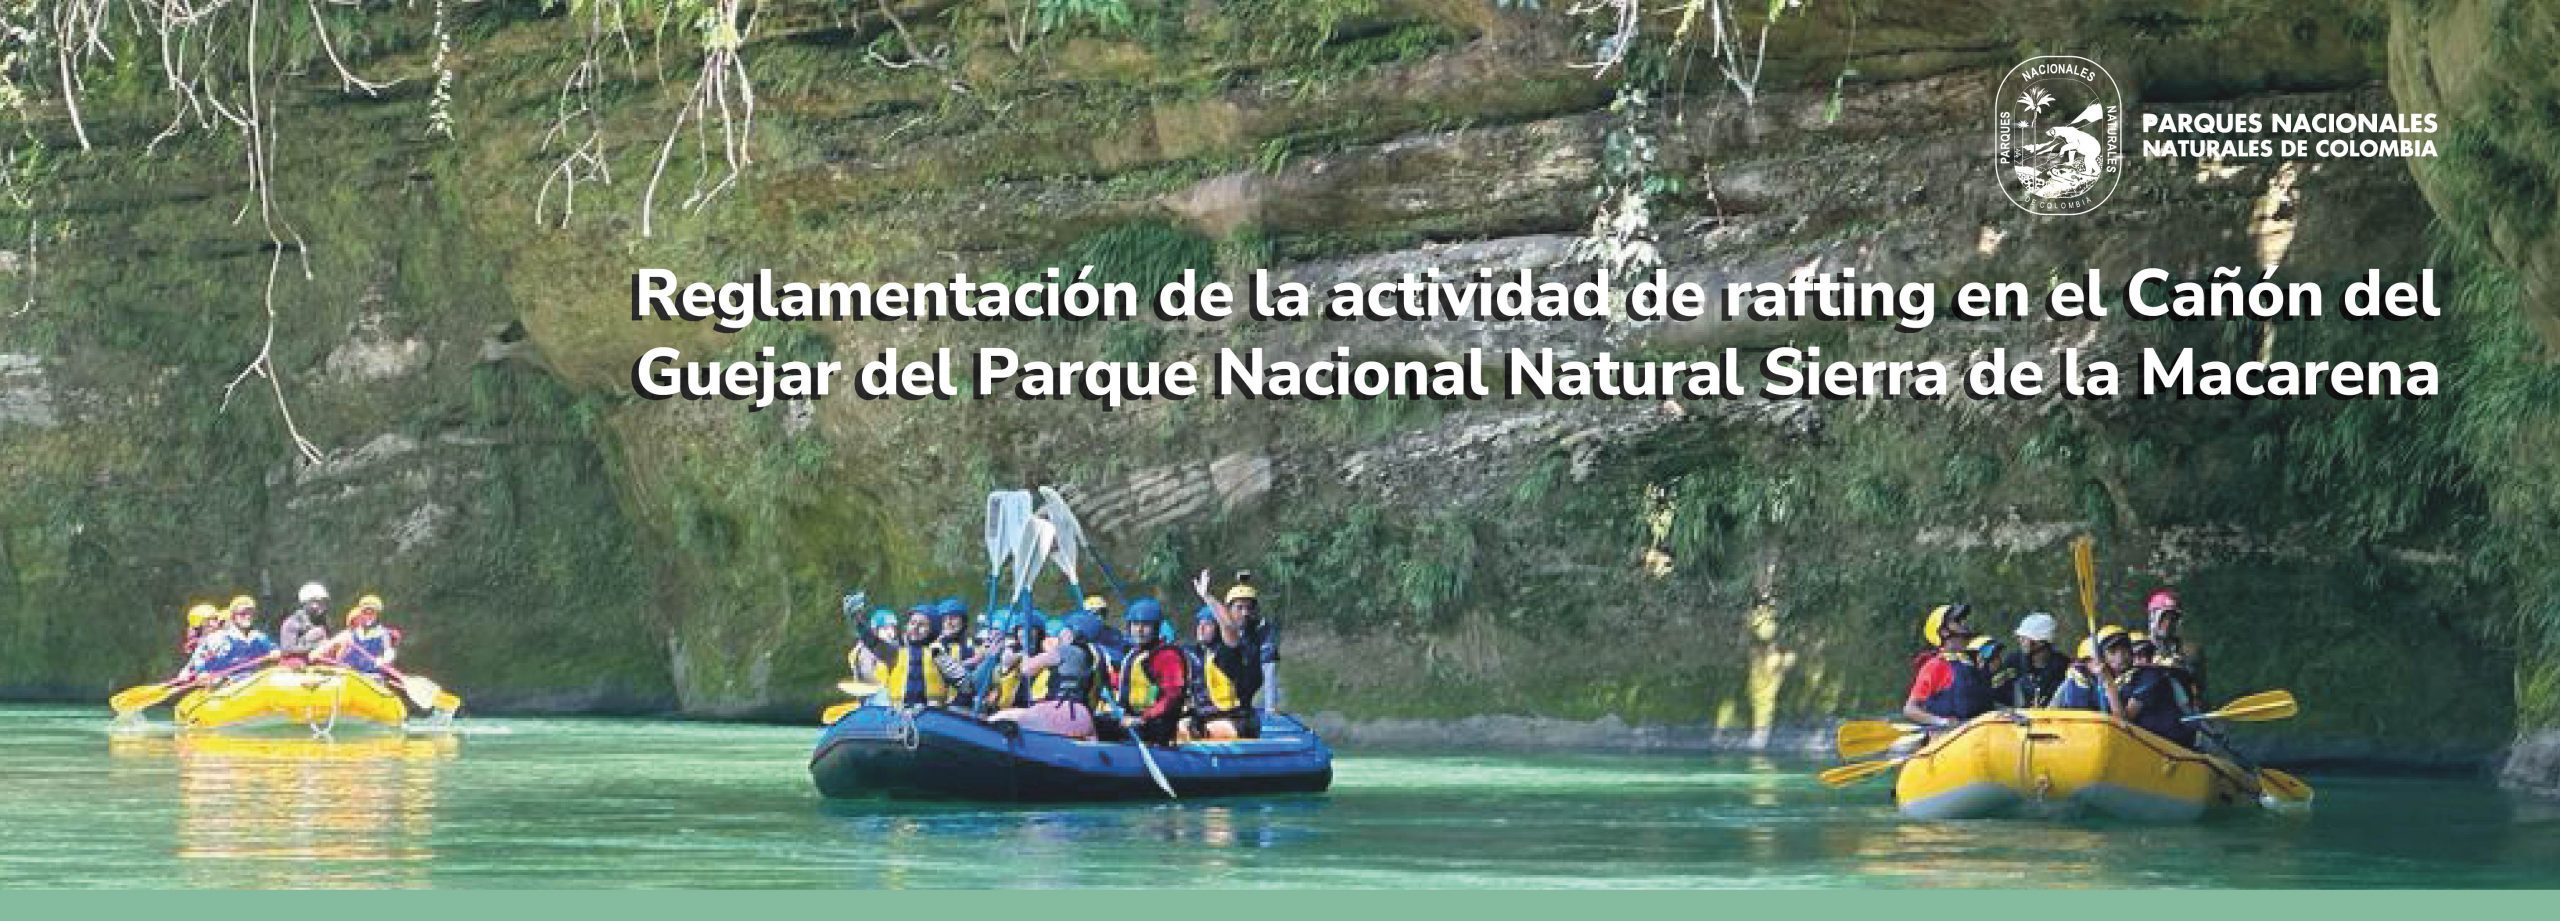 Reglamentación de la actividad de rafting en el Cañón del Güejar del Parque Nacional Natural Sierra de la Macarena